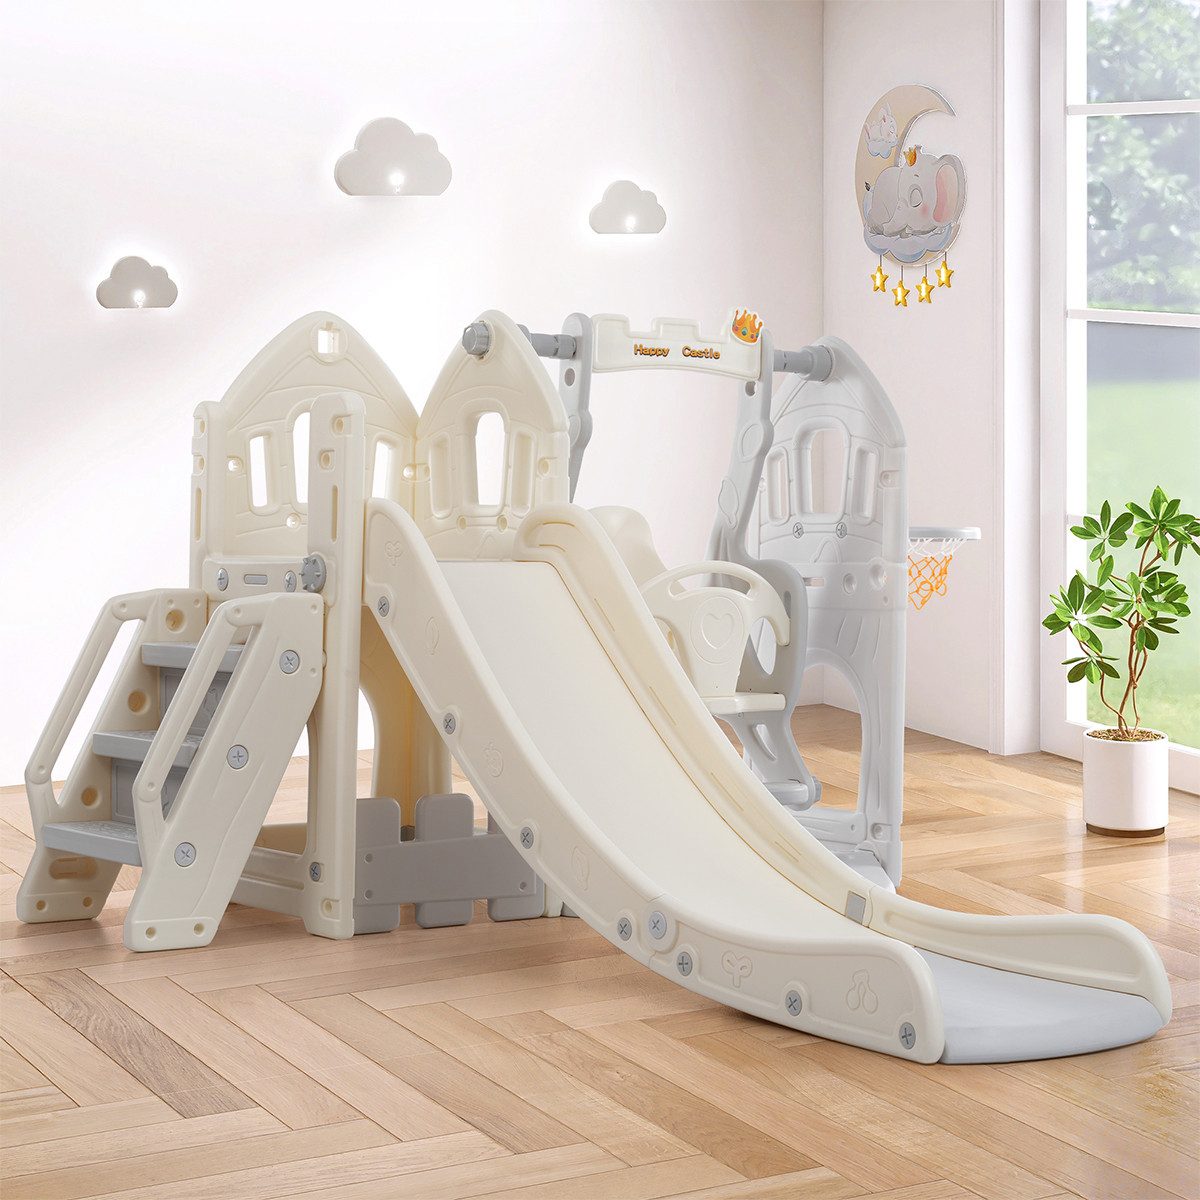 XDeer Indoor-Rutsche Kinderrutsche mit Schaukel,5 in 1 Kinderrutschen-Set, Kletterspielzeug Rutsche Klettern Stauraum Schaukel Rutsche